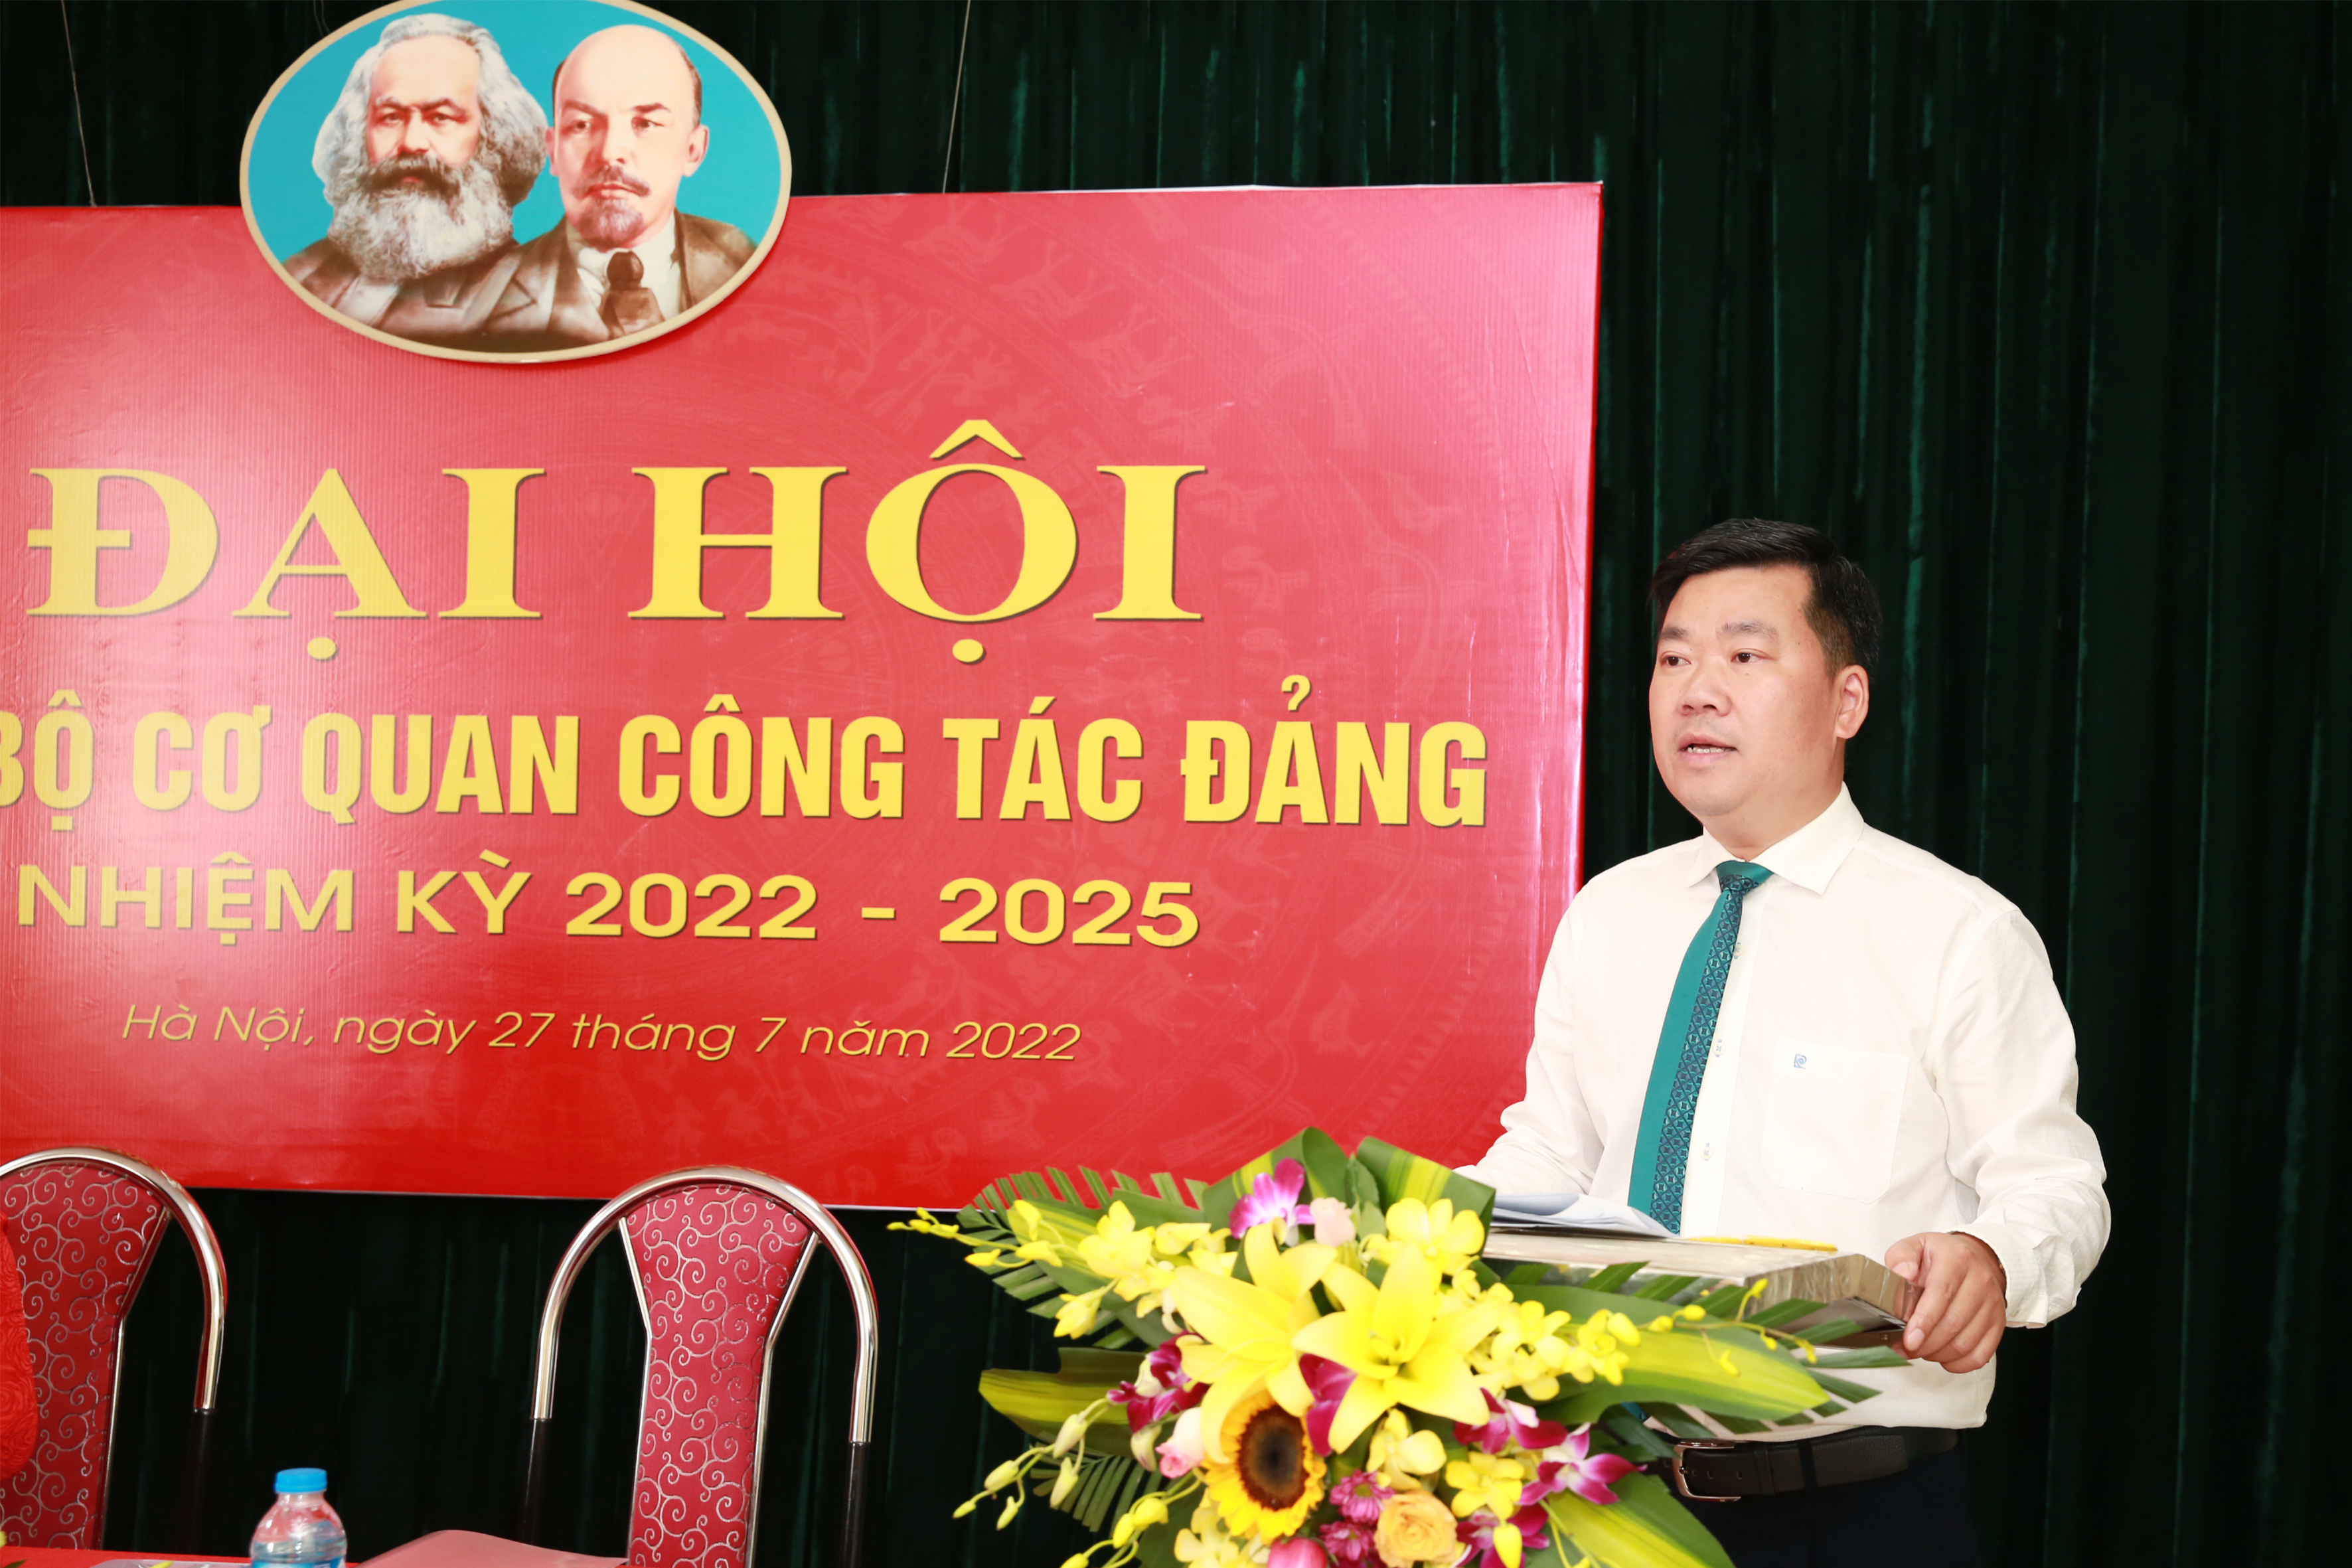 Chi bộ Cơ quan Công tác Đảng tổ chức Đại hội nhiệm kỳ 2022-2025